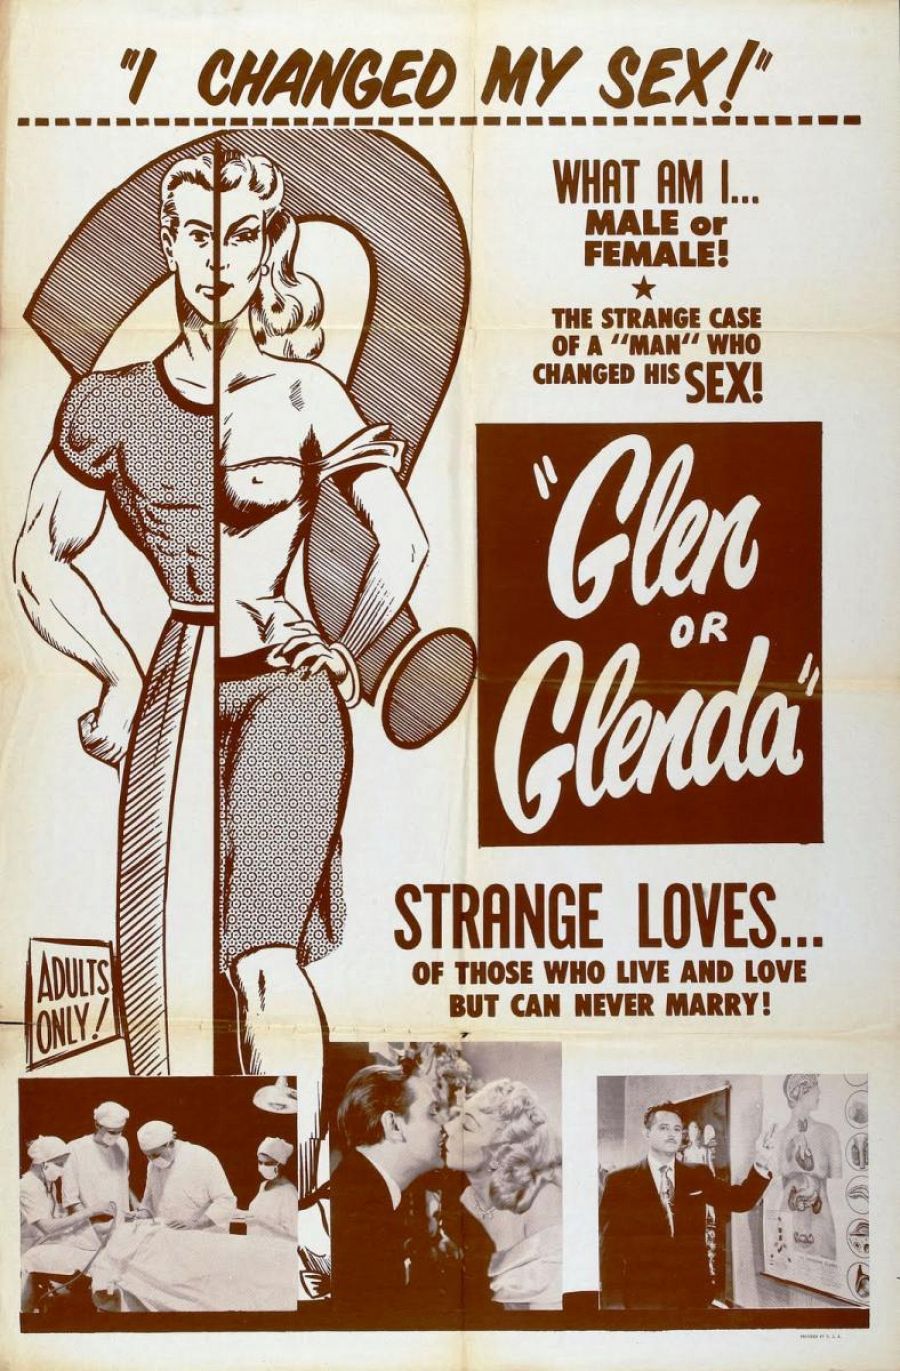  El novedoso cartel de 'Glen o Glenda' (1953), precursora de las representaciones de la transexualidad